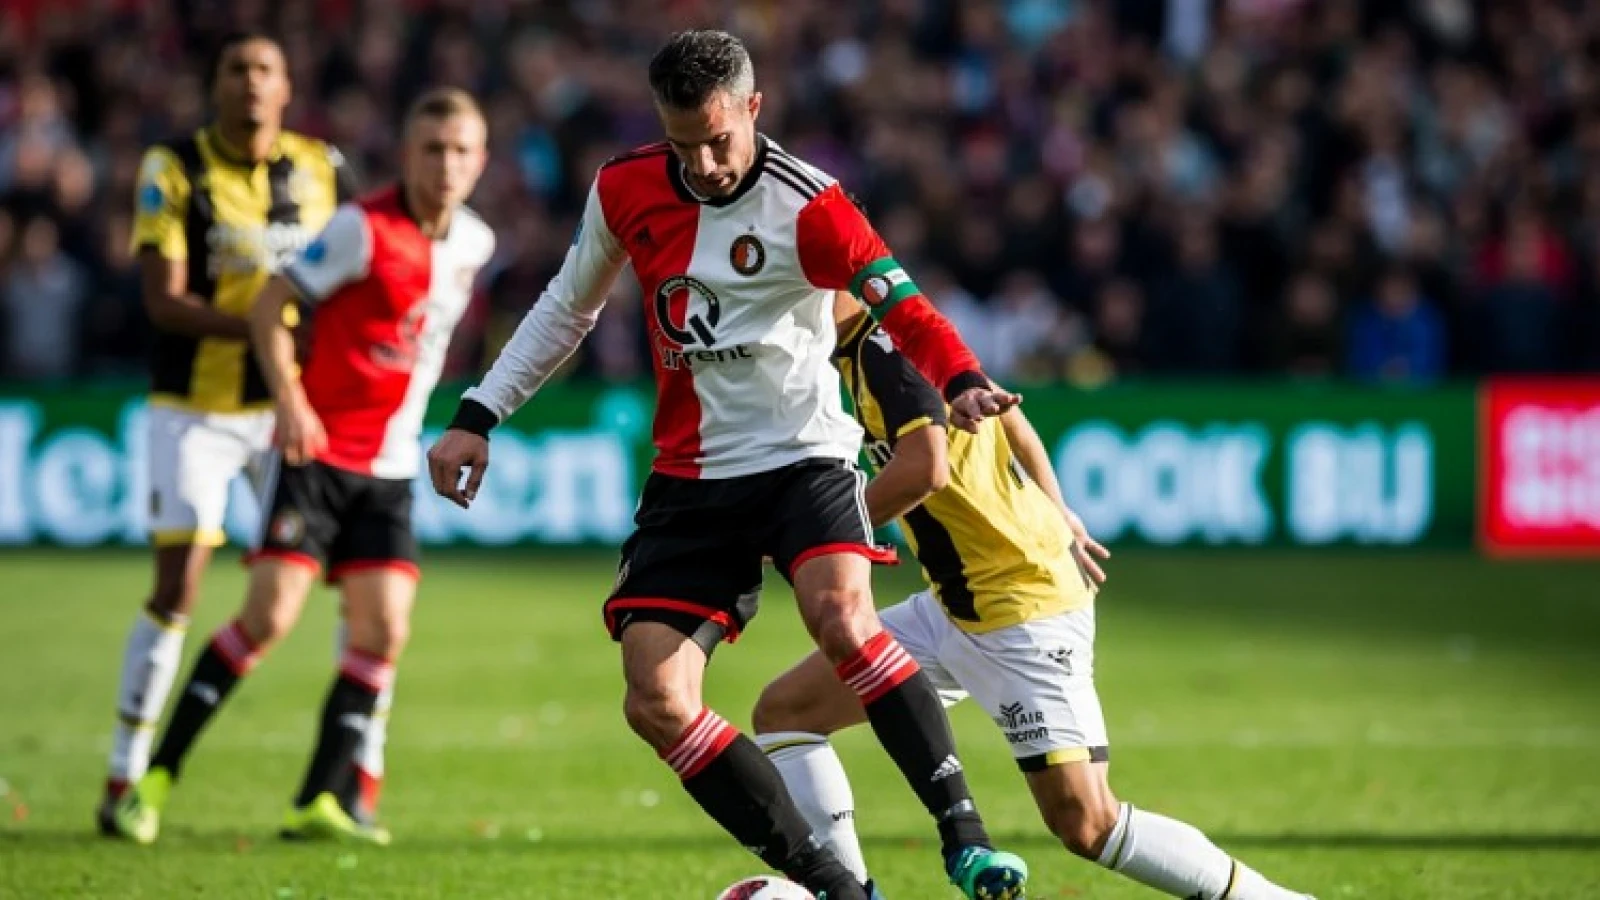 LIVE | Feyenoord - Vitesse 2-1 | Einde wedstrijd